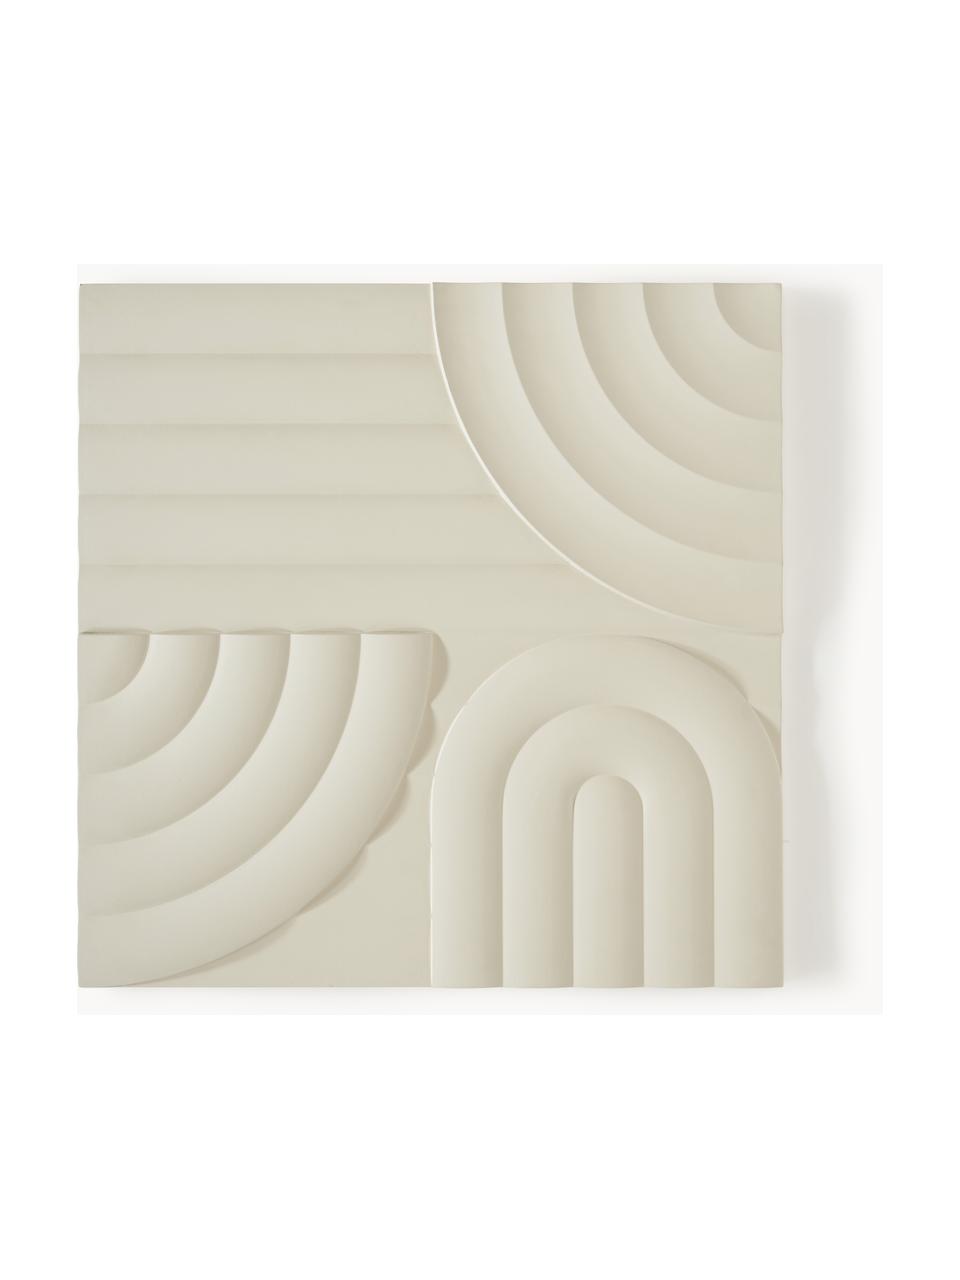 Wandobjekt Massimo, Mitteldichte Holzfaserplatte (MDF), Hellbeige, B 80 x H 80 cm